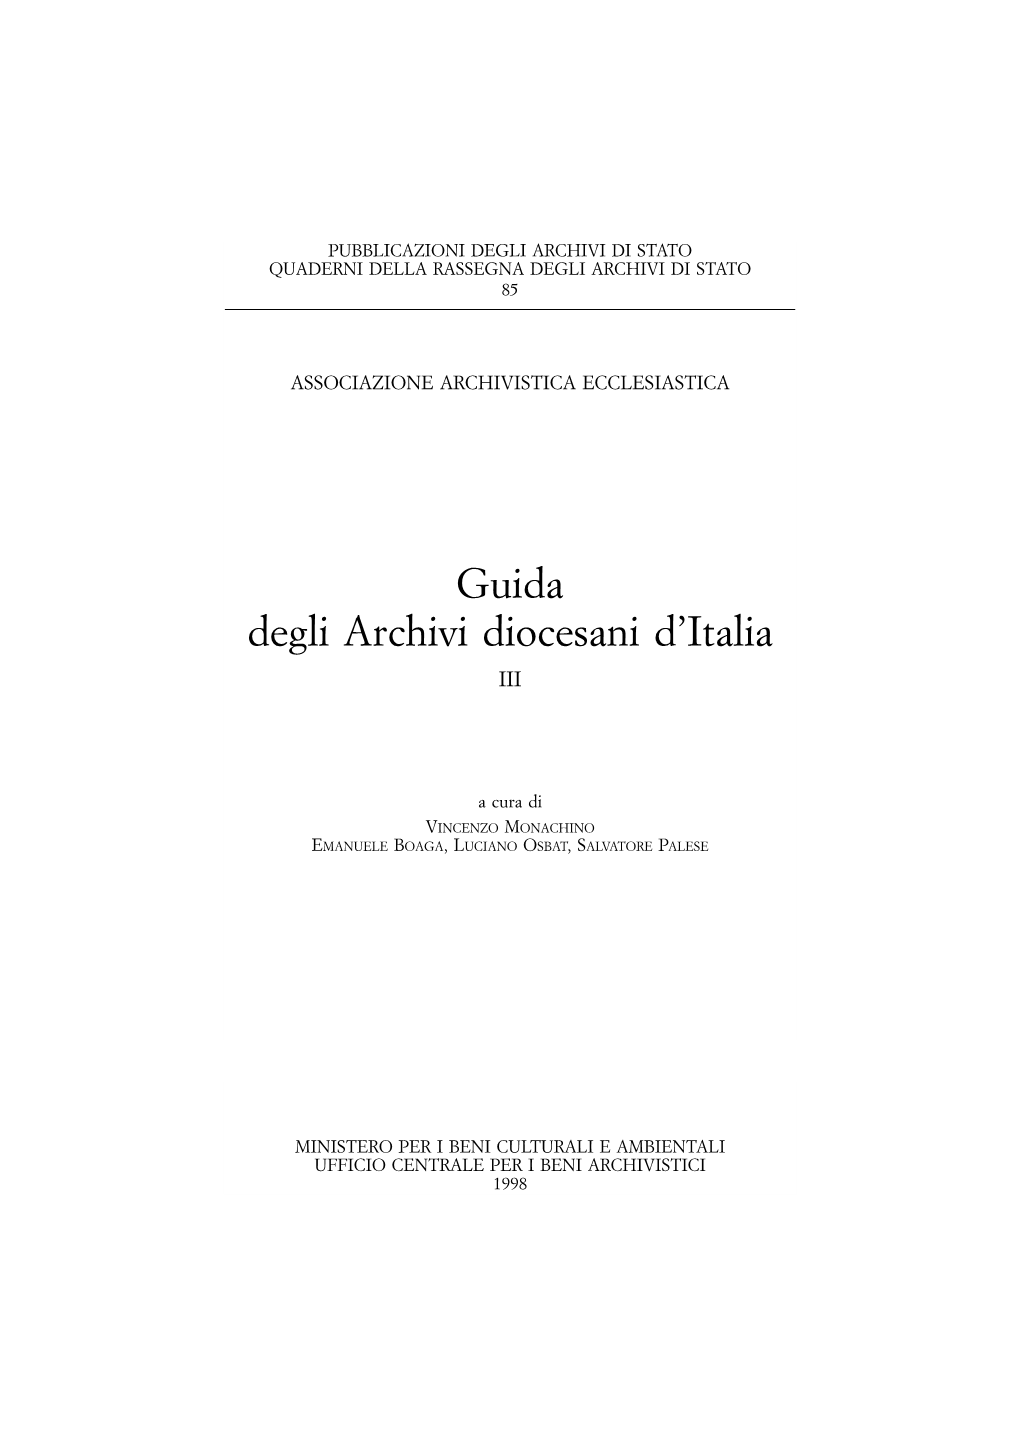 Guida Degli Archivi Diocesani D'italia